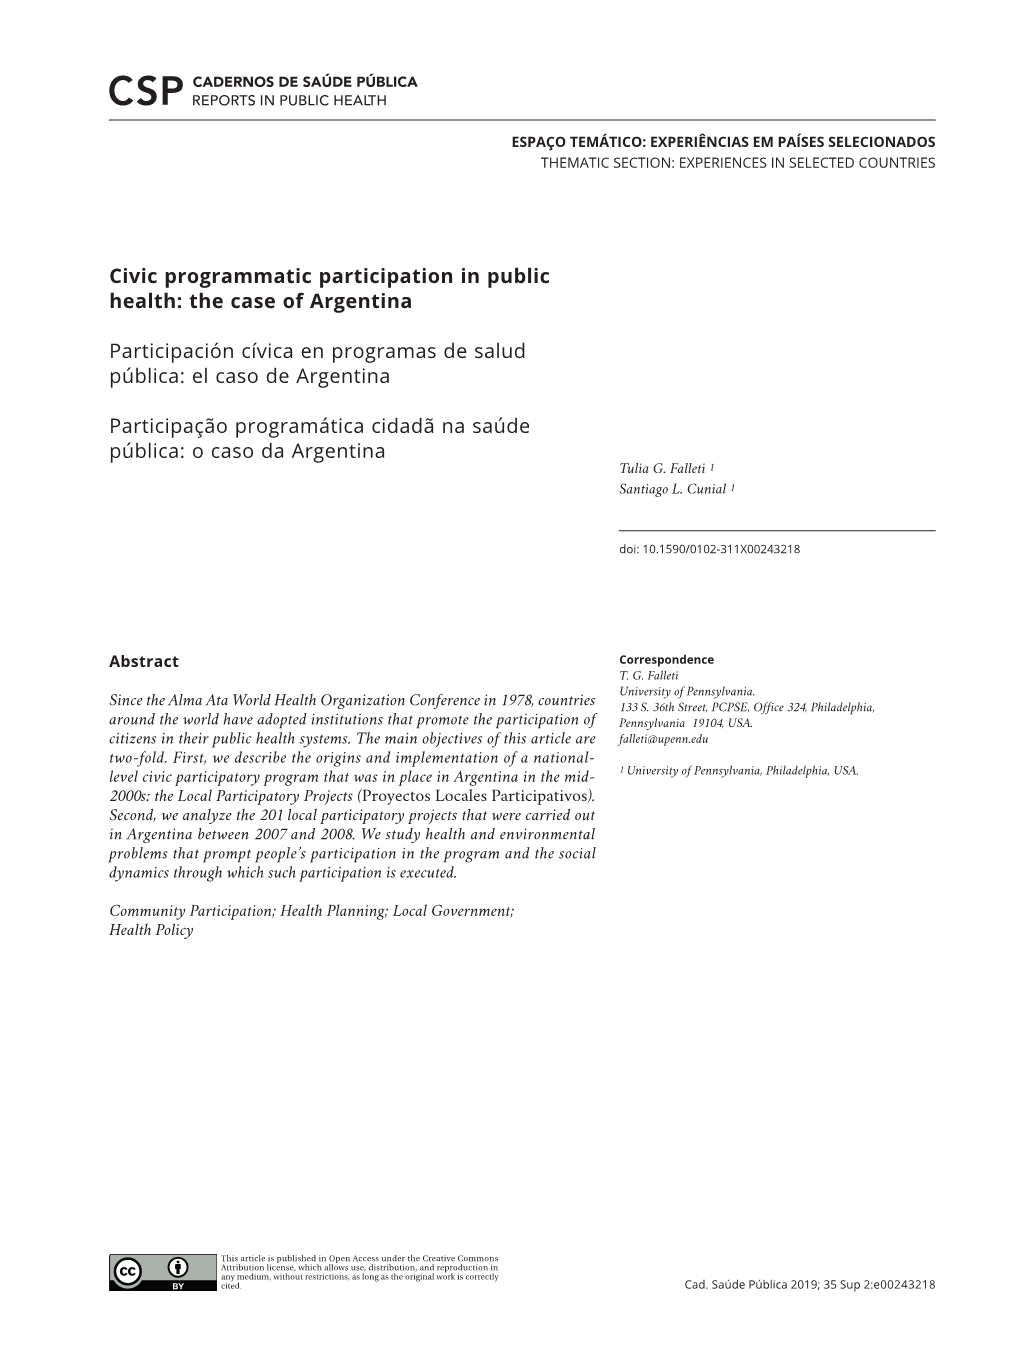 Civic Programmatic Participation in Public Health: the Case of Argentina Participación Cívica En Programas De Salud Pública